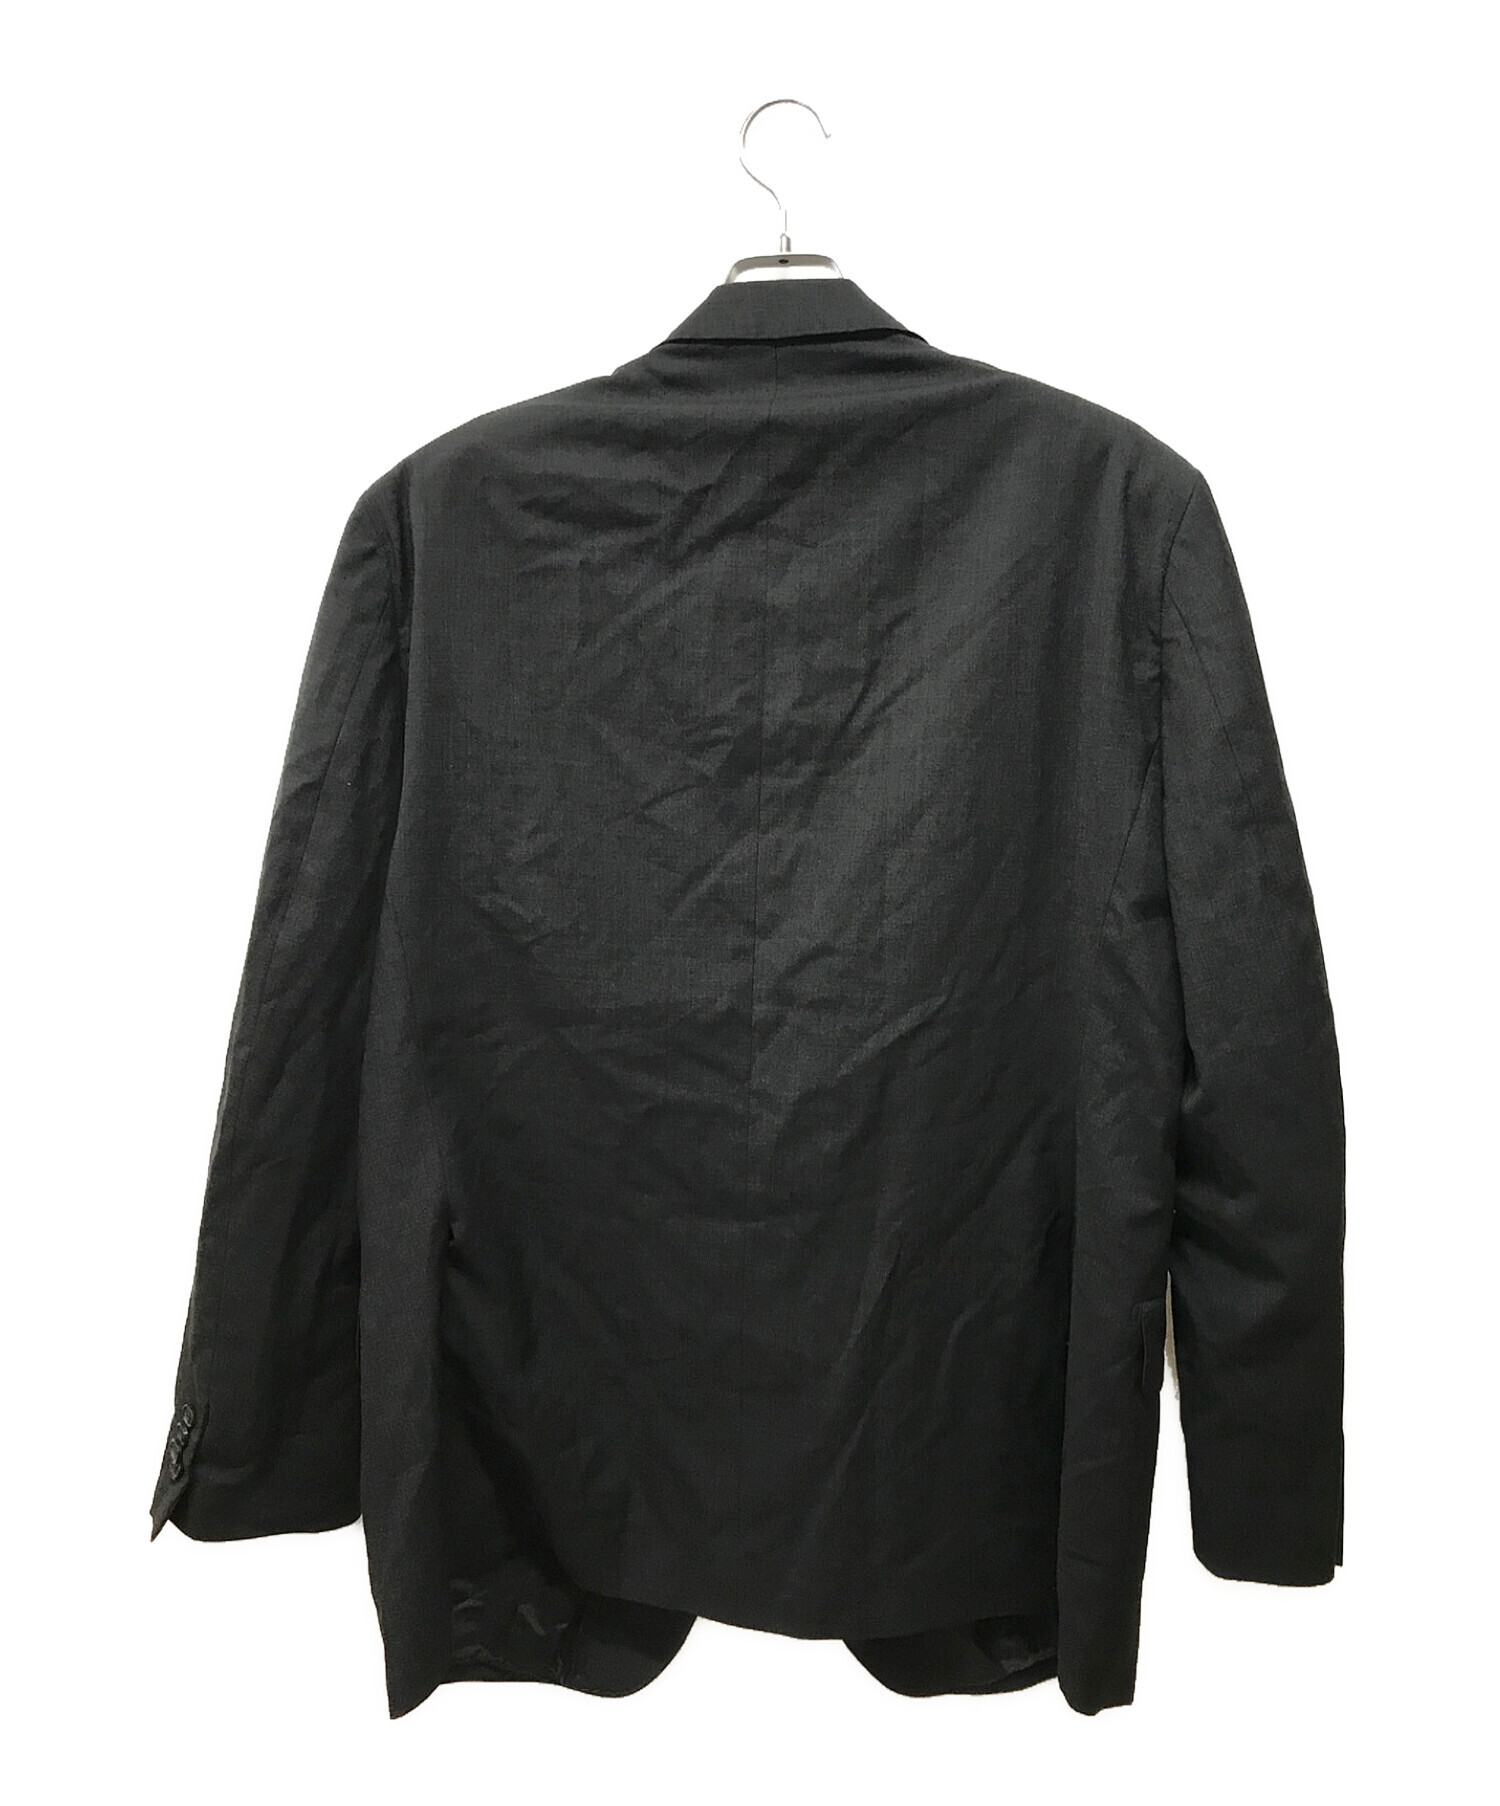 Yves Saint Laurent (イヴサンローラン) 3Bテーラードジャケット ブラック サイズ:56